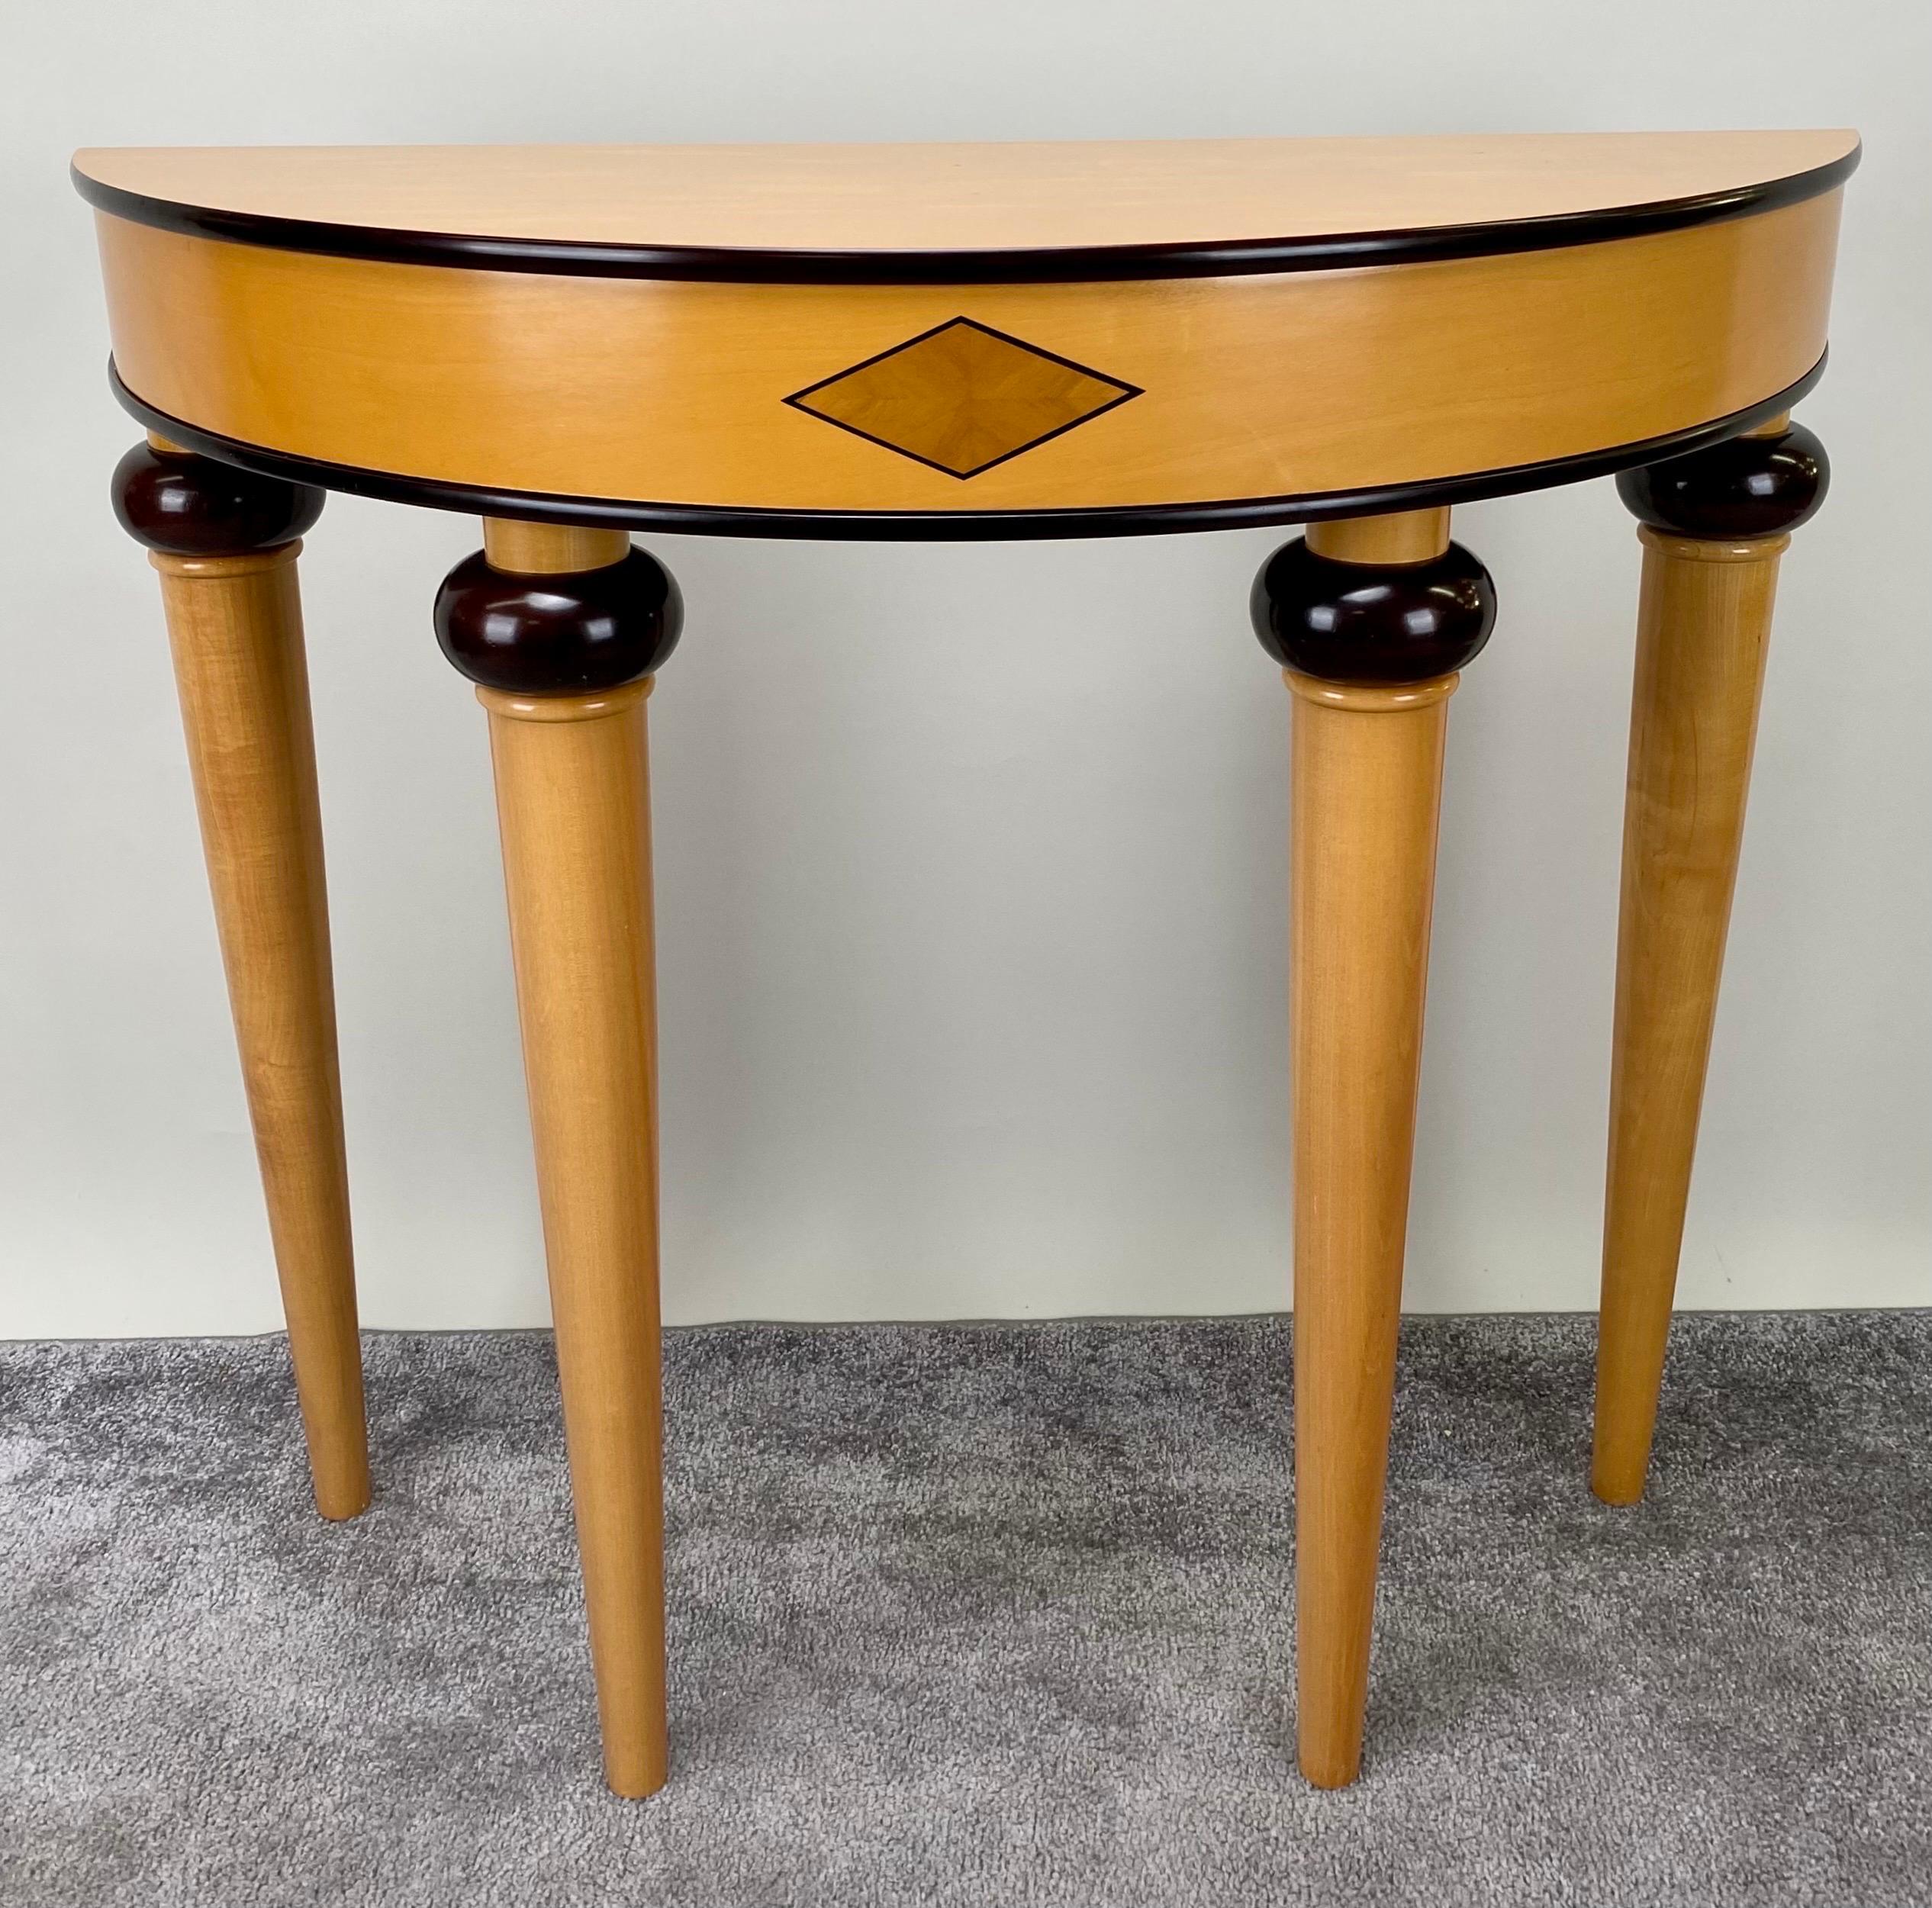 North American Art Deco Style Demi-Lune Console Table For Sale